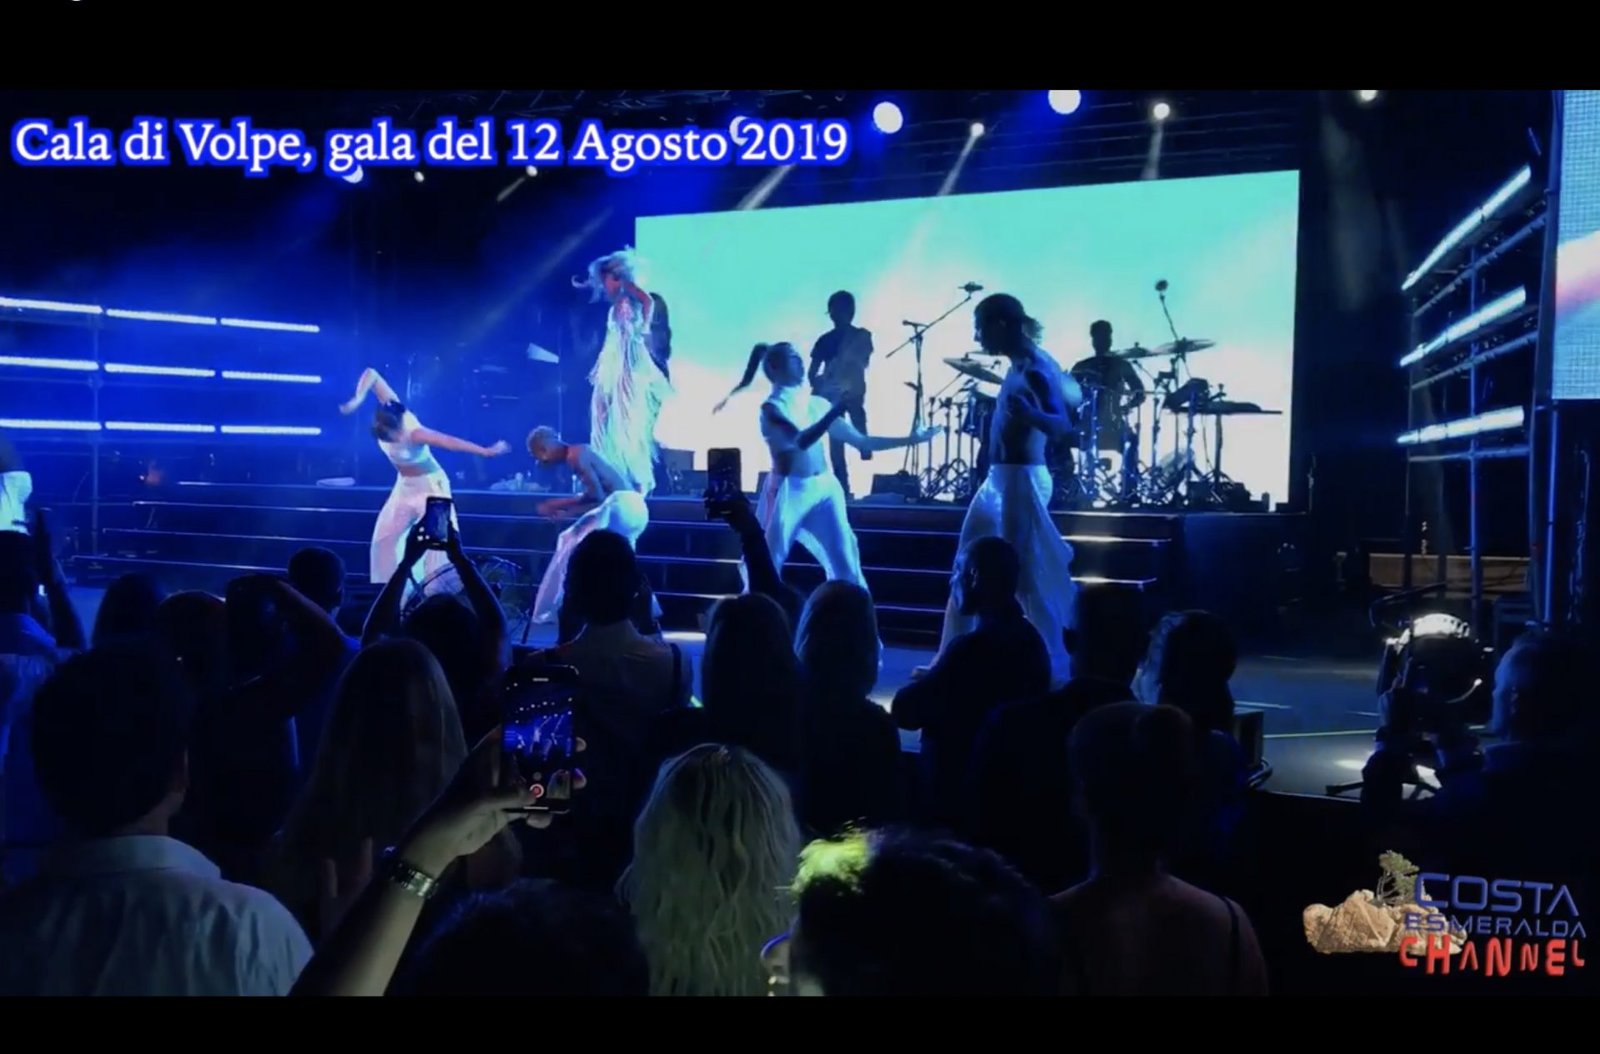 Gala del Cala di volpe con Rita Ora – agosto 2019